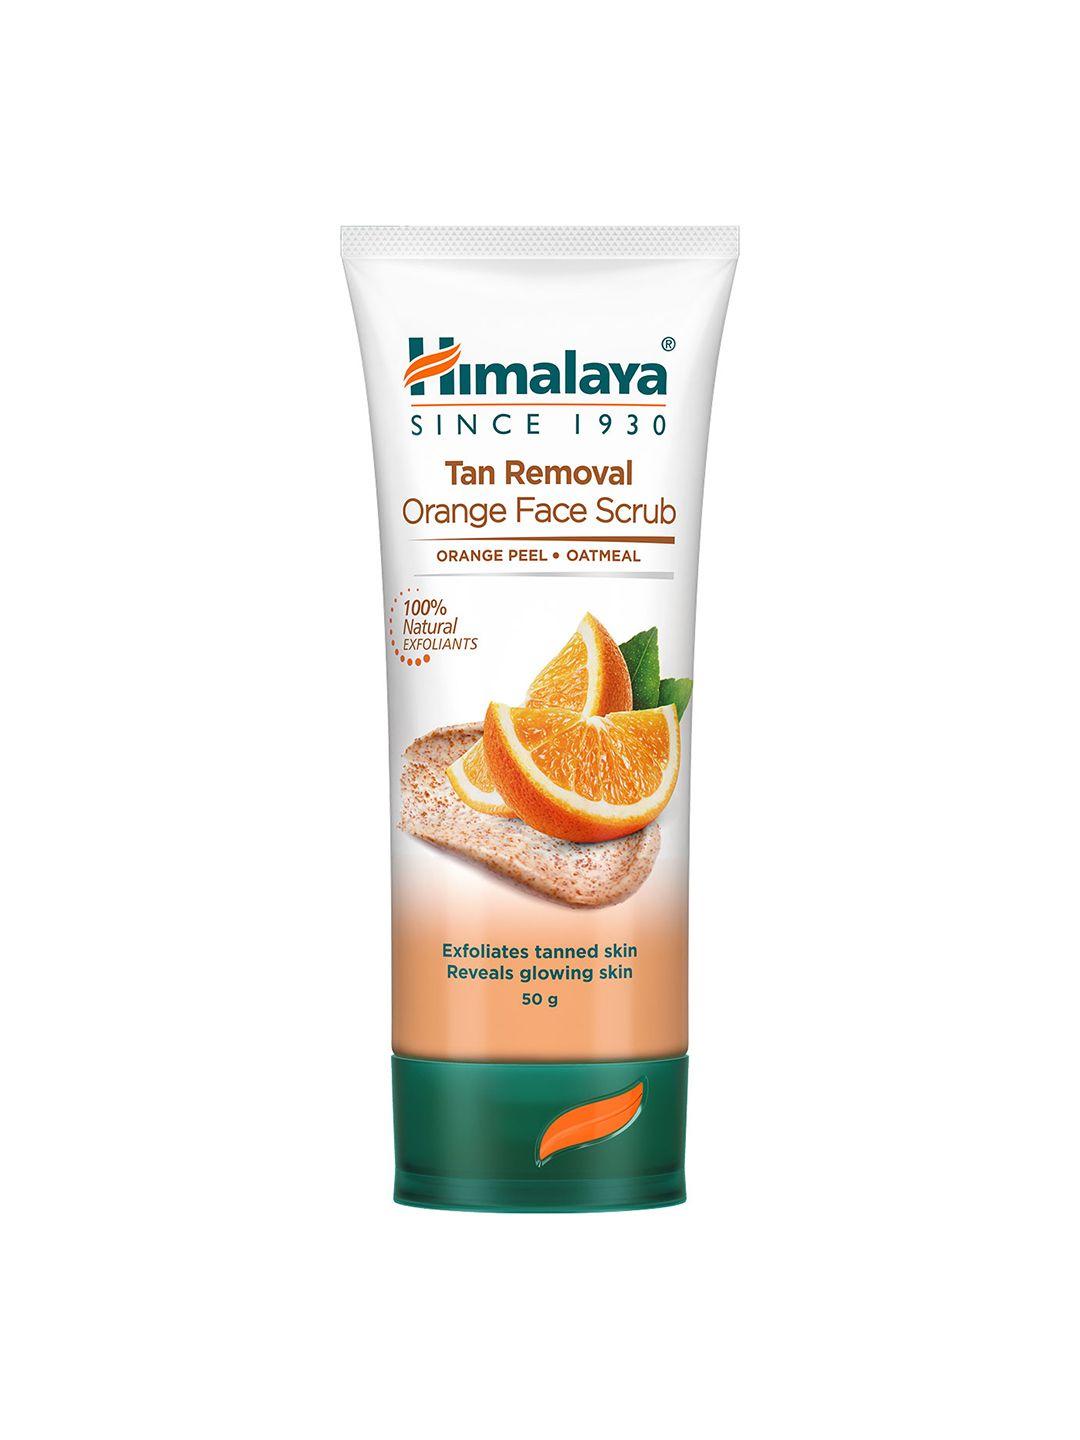 himalaya tan removal orange face scrub with oatmeal for glowing skin - 50g